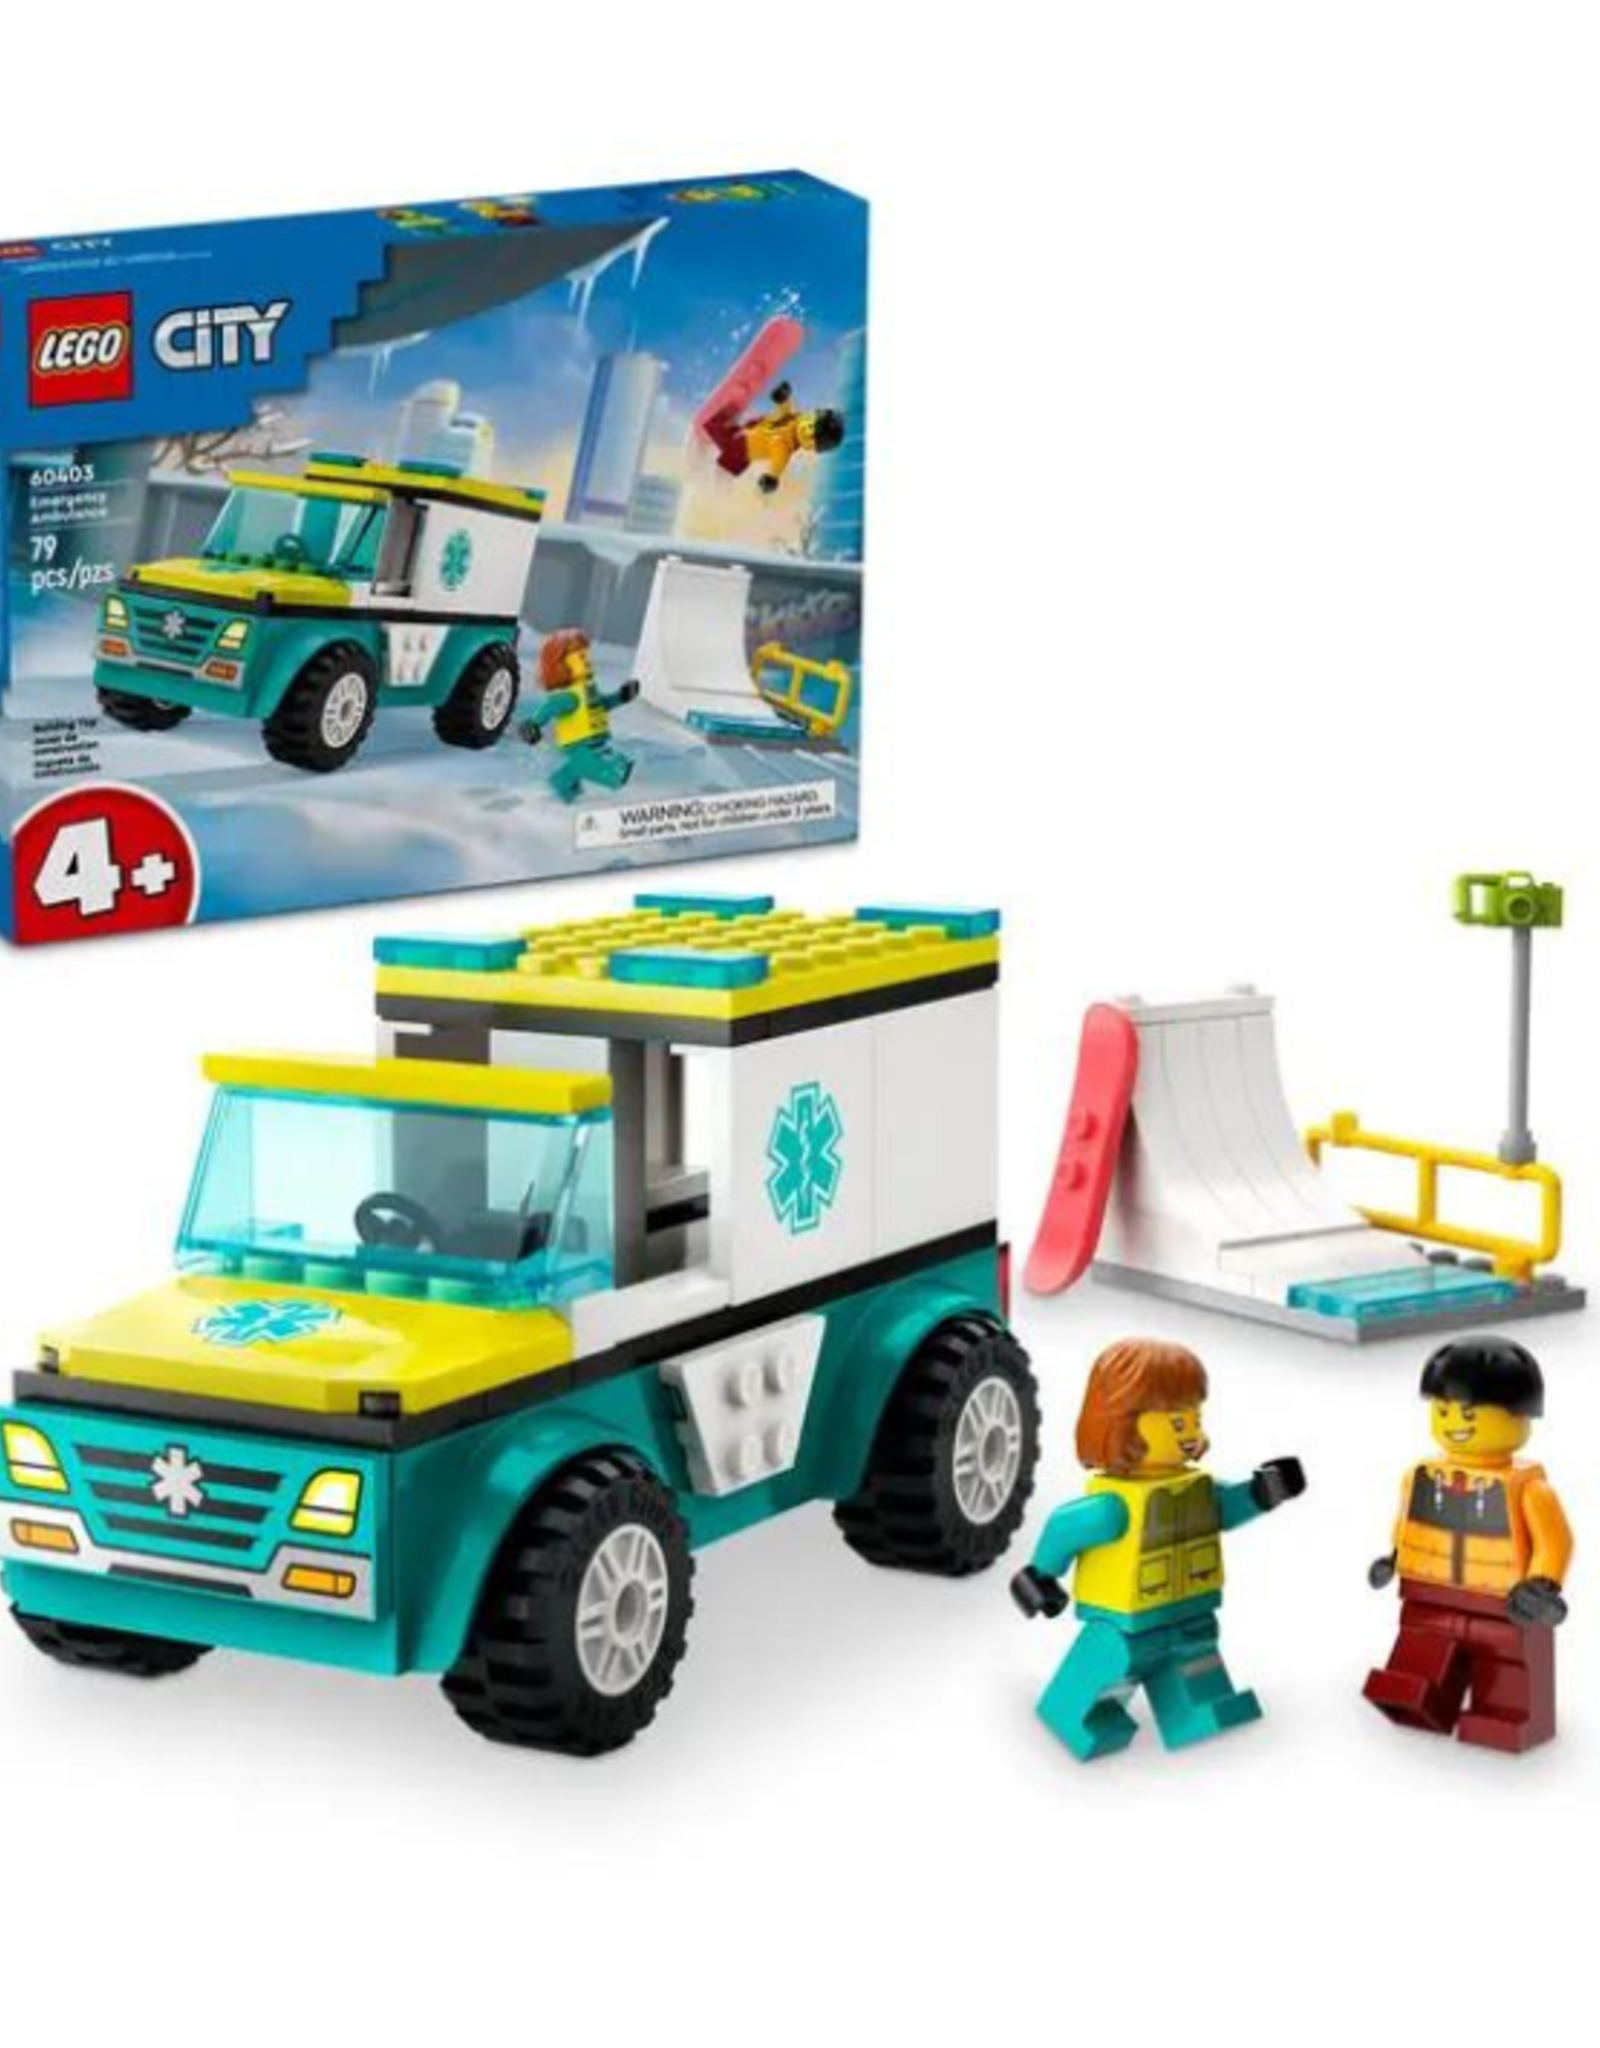 Lego Lego - City - 60403 - Emergency Ambulance and Snowboarder